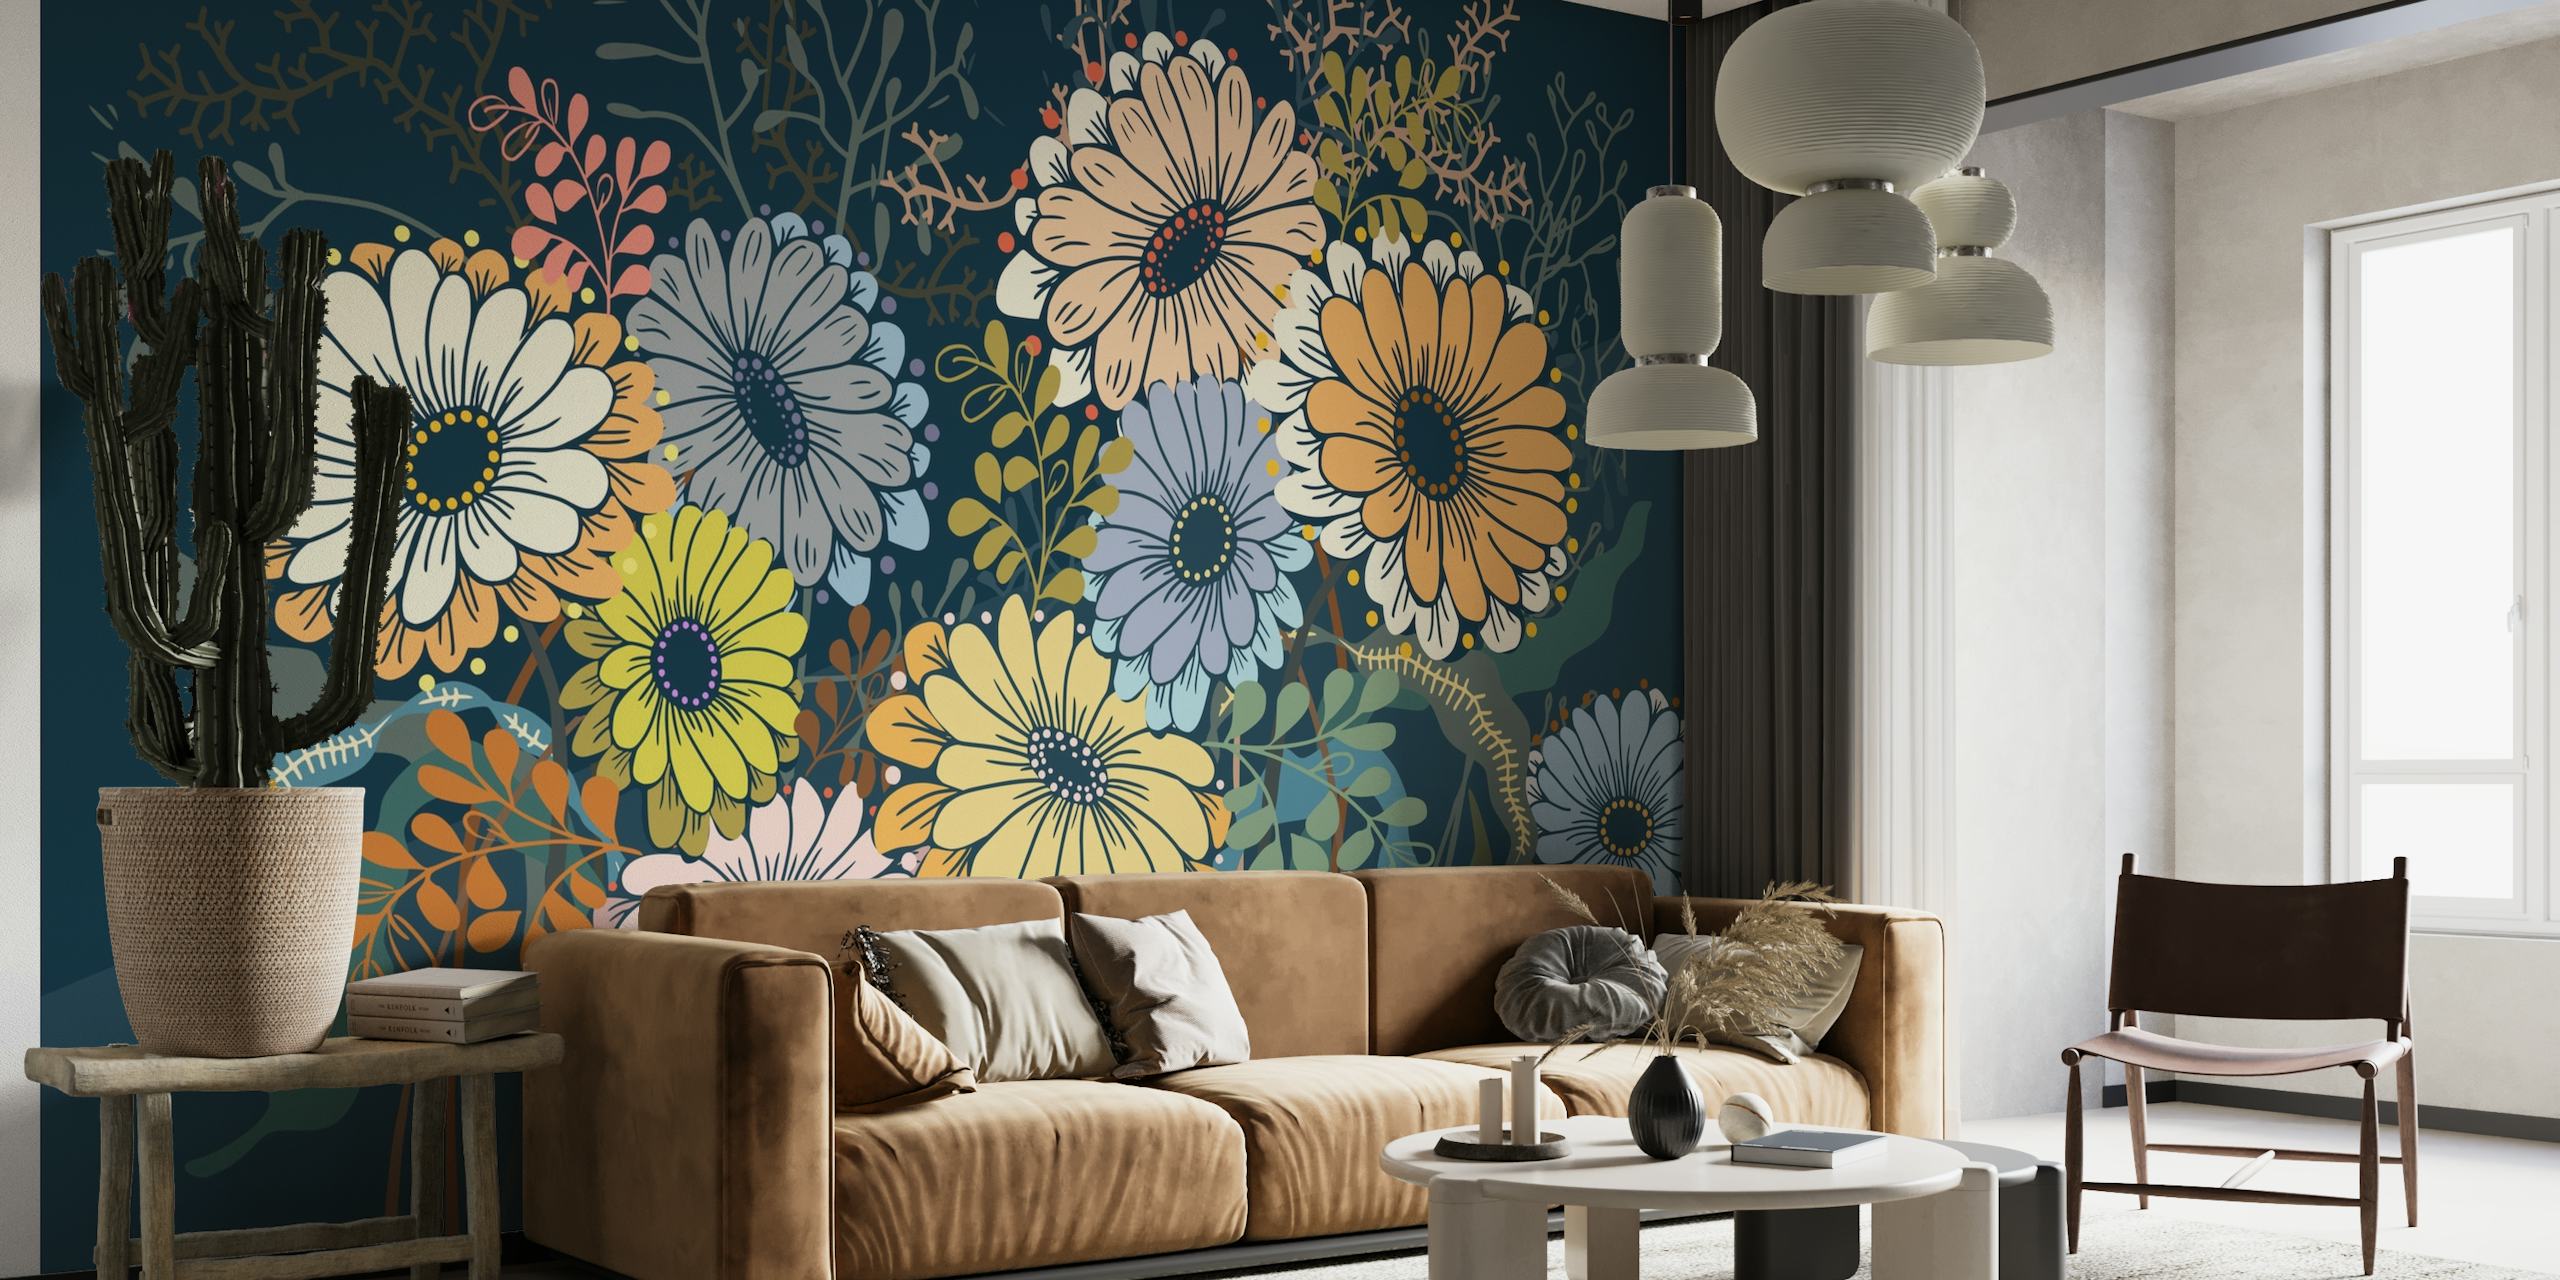 Good mood daisies wallpaper